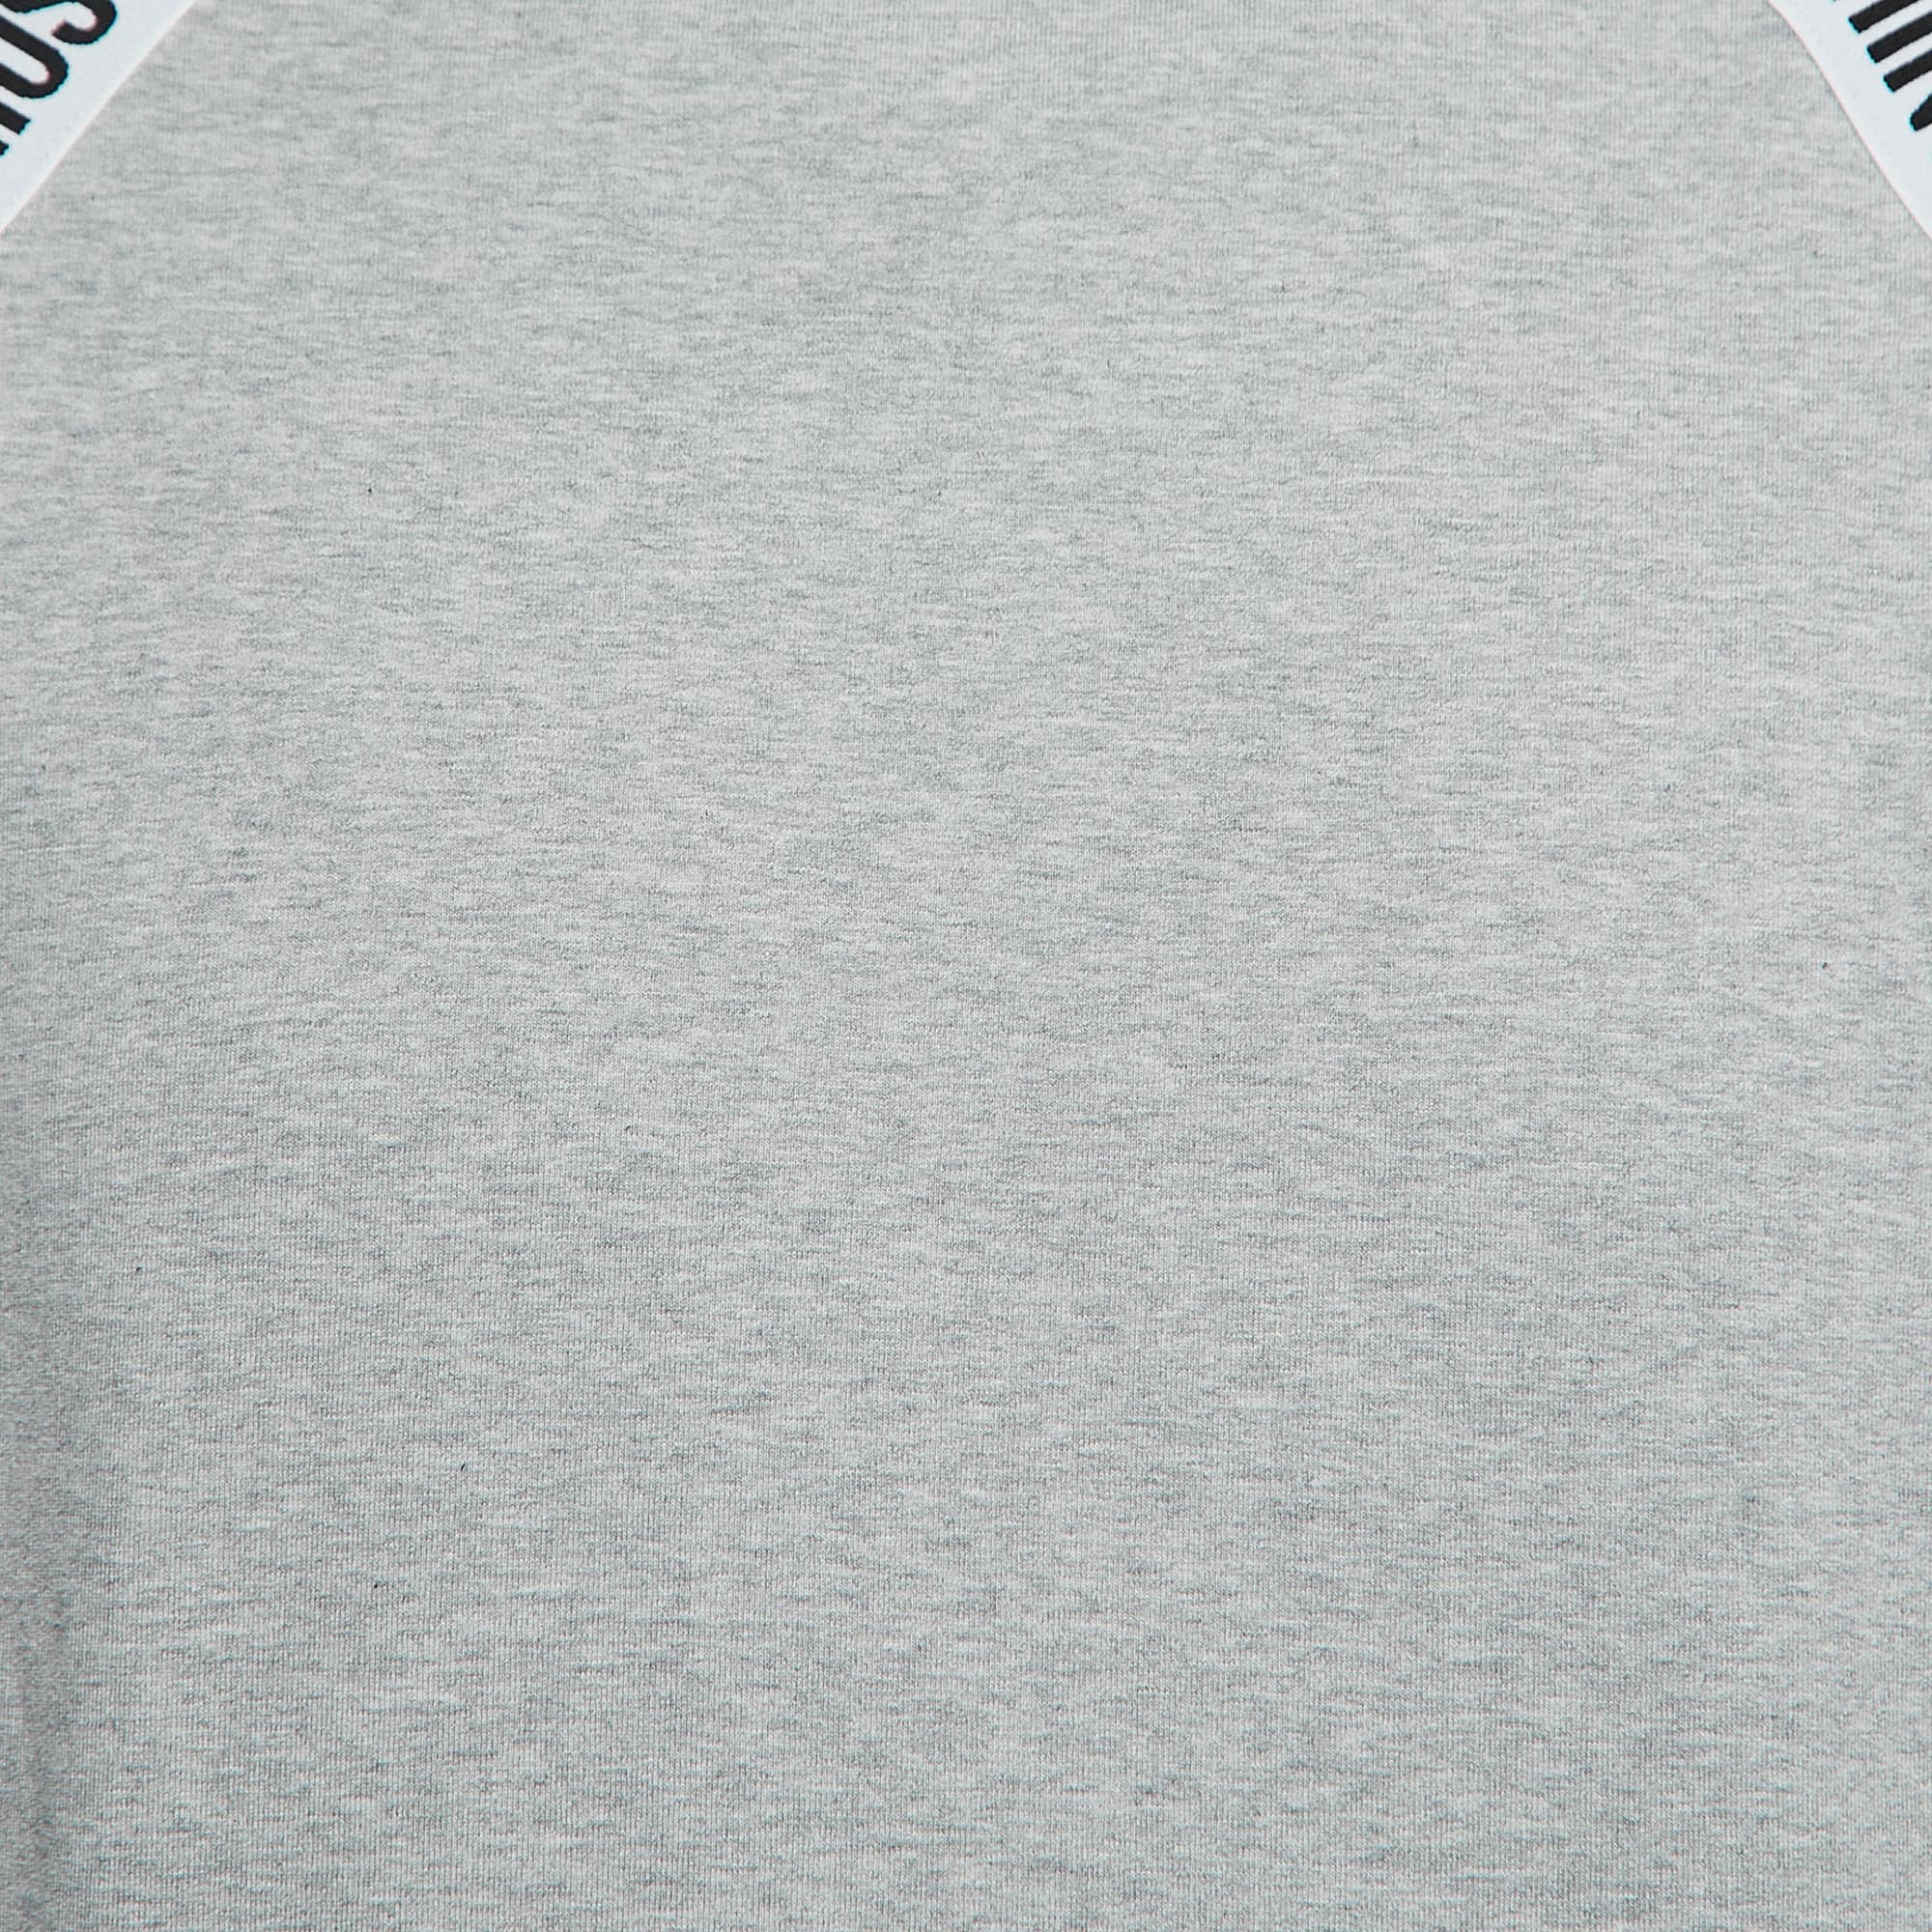 Moschino Underwear Grey Cotton Logo Tape Detail Crew Neck Sweatshirt M